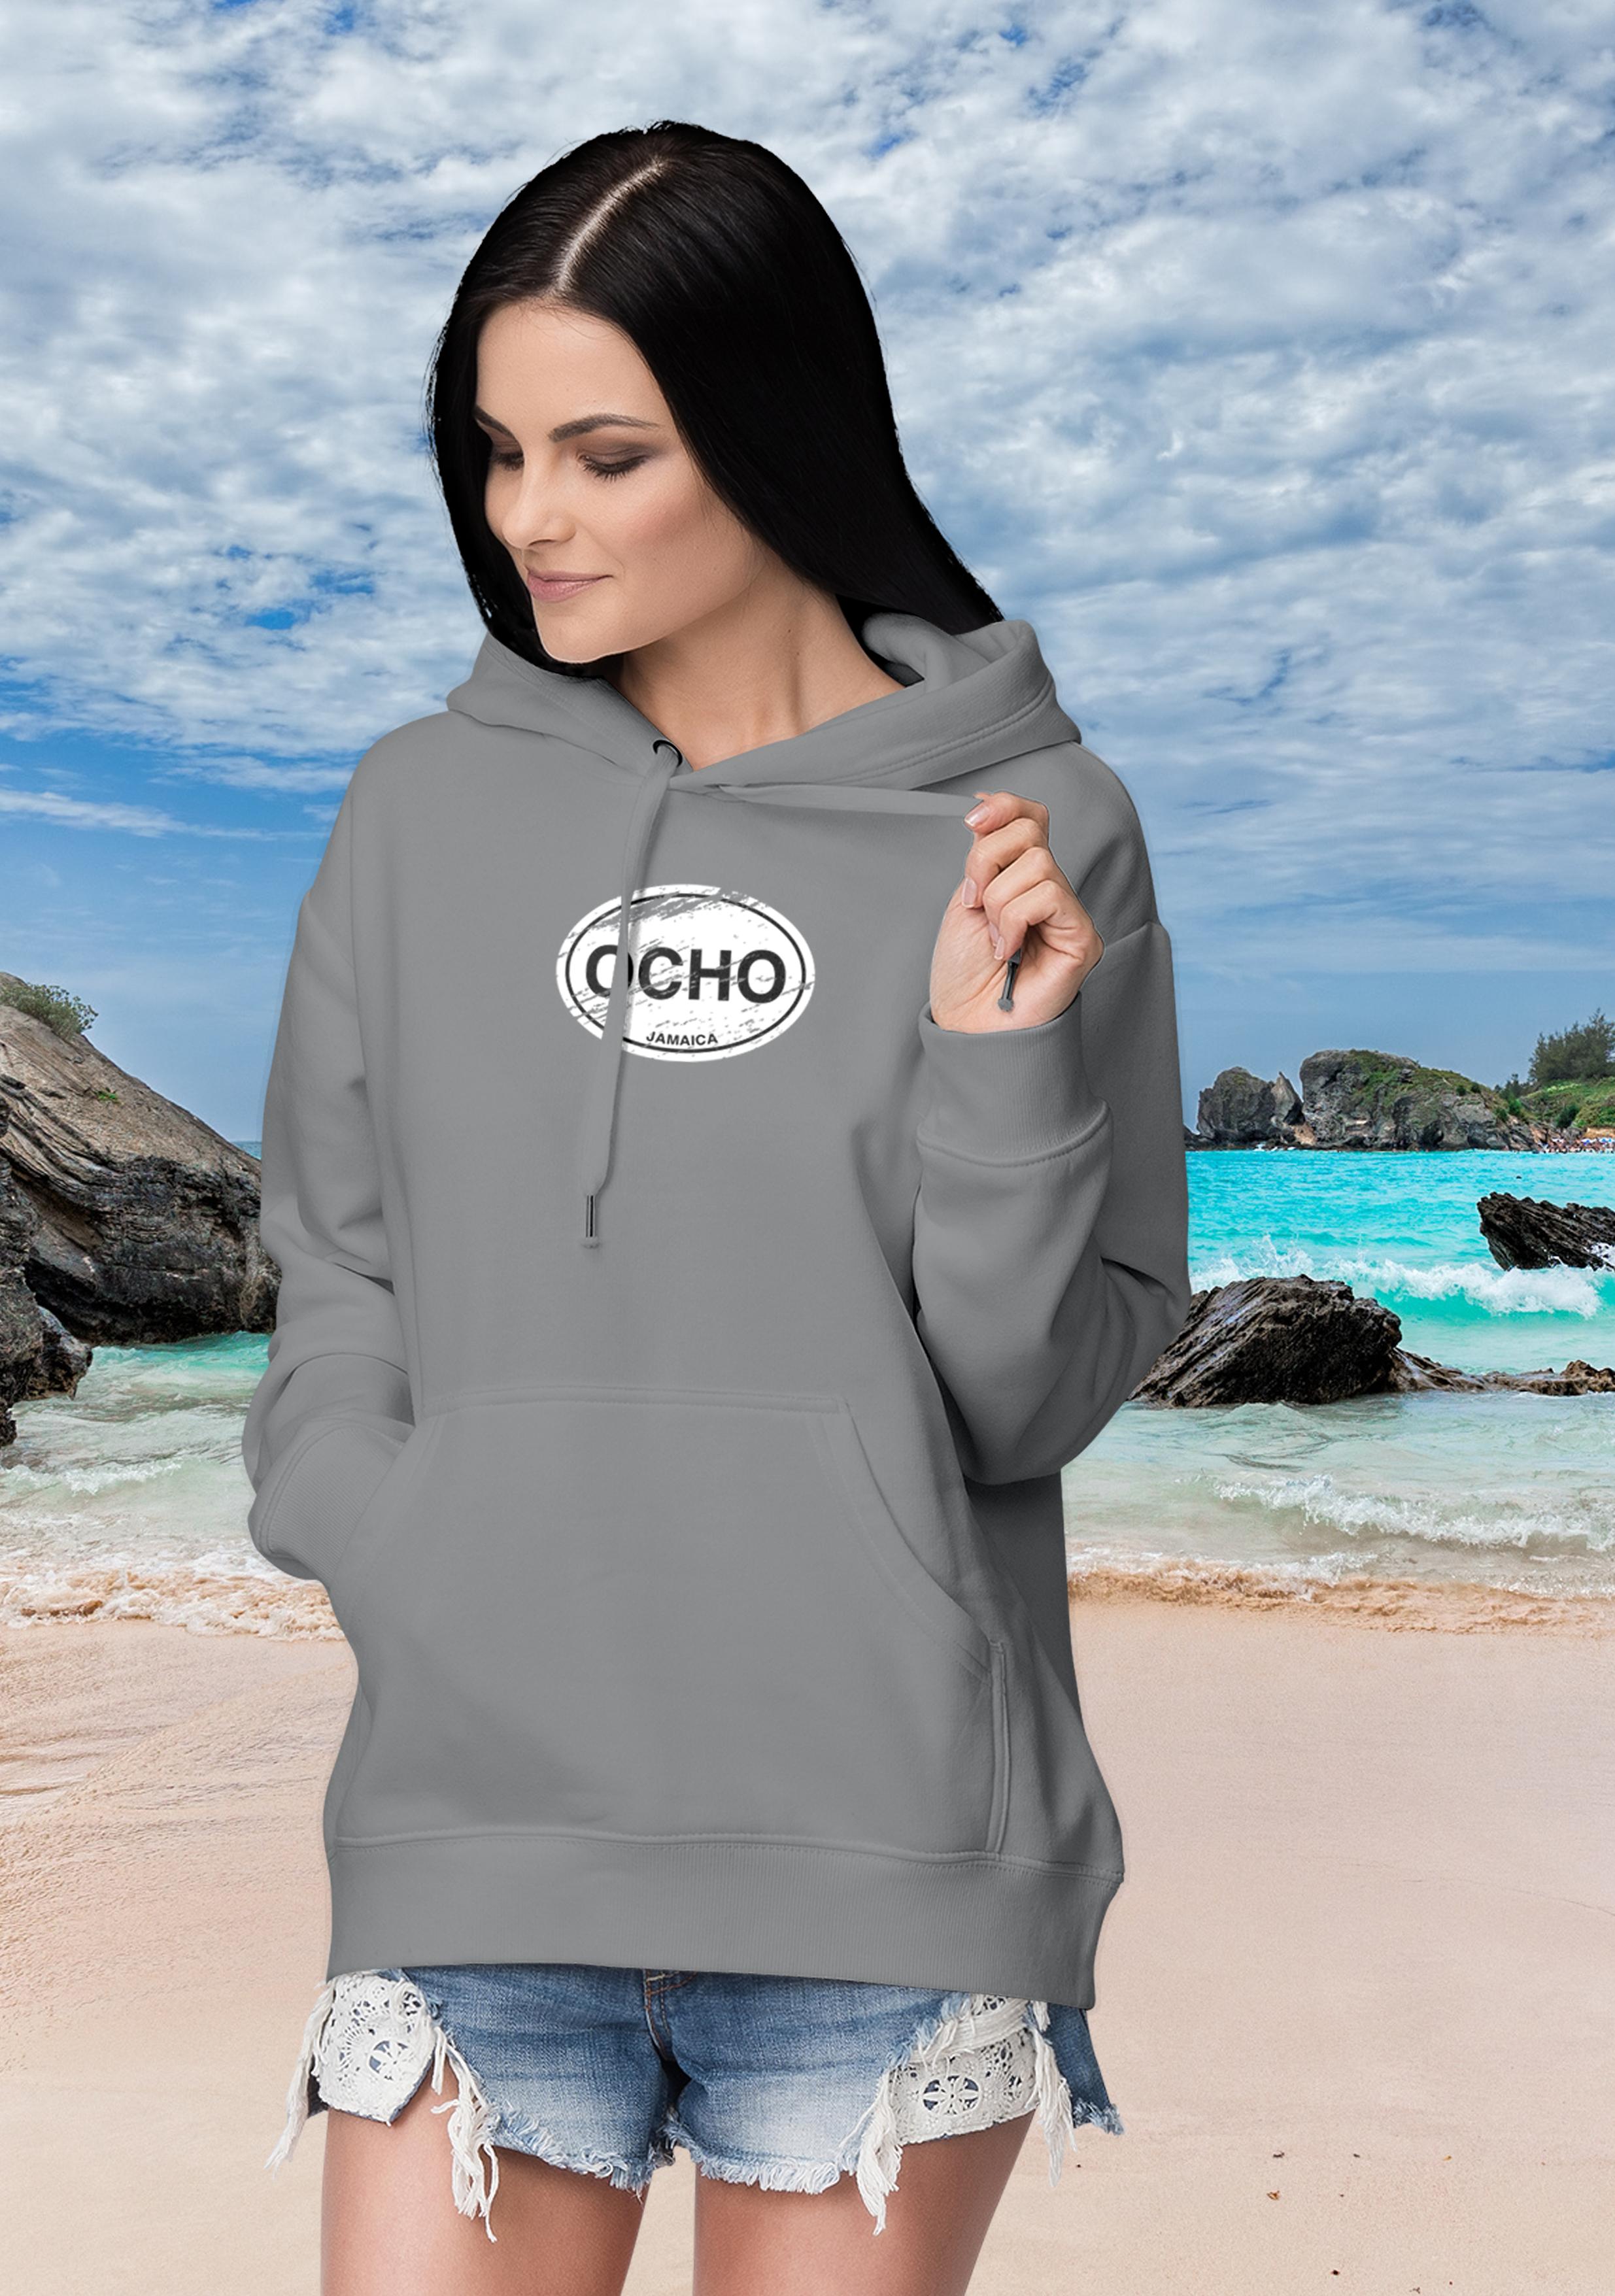 Ocho Rios Unisex Classic Adult Hoodie - My Destination Location